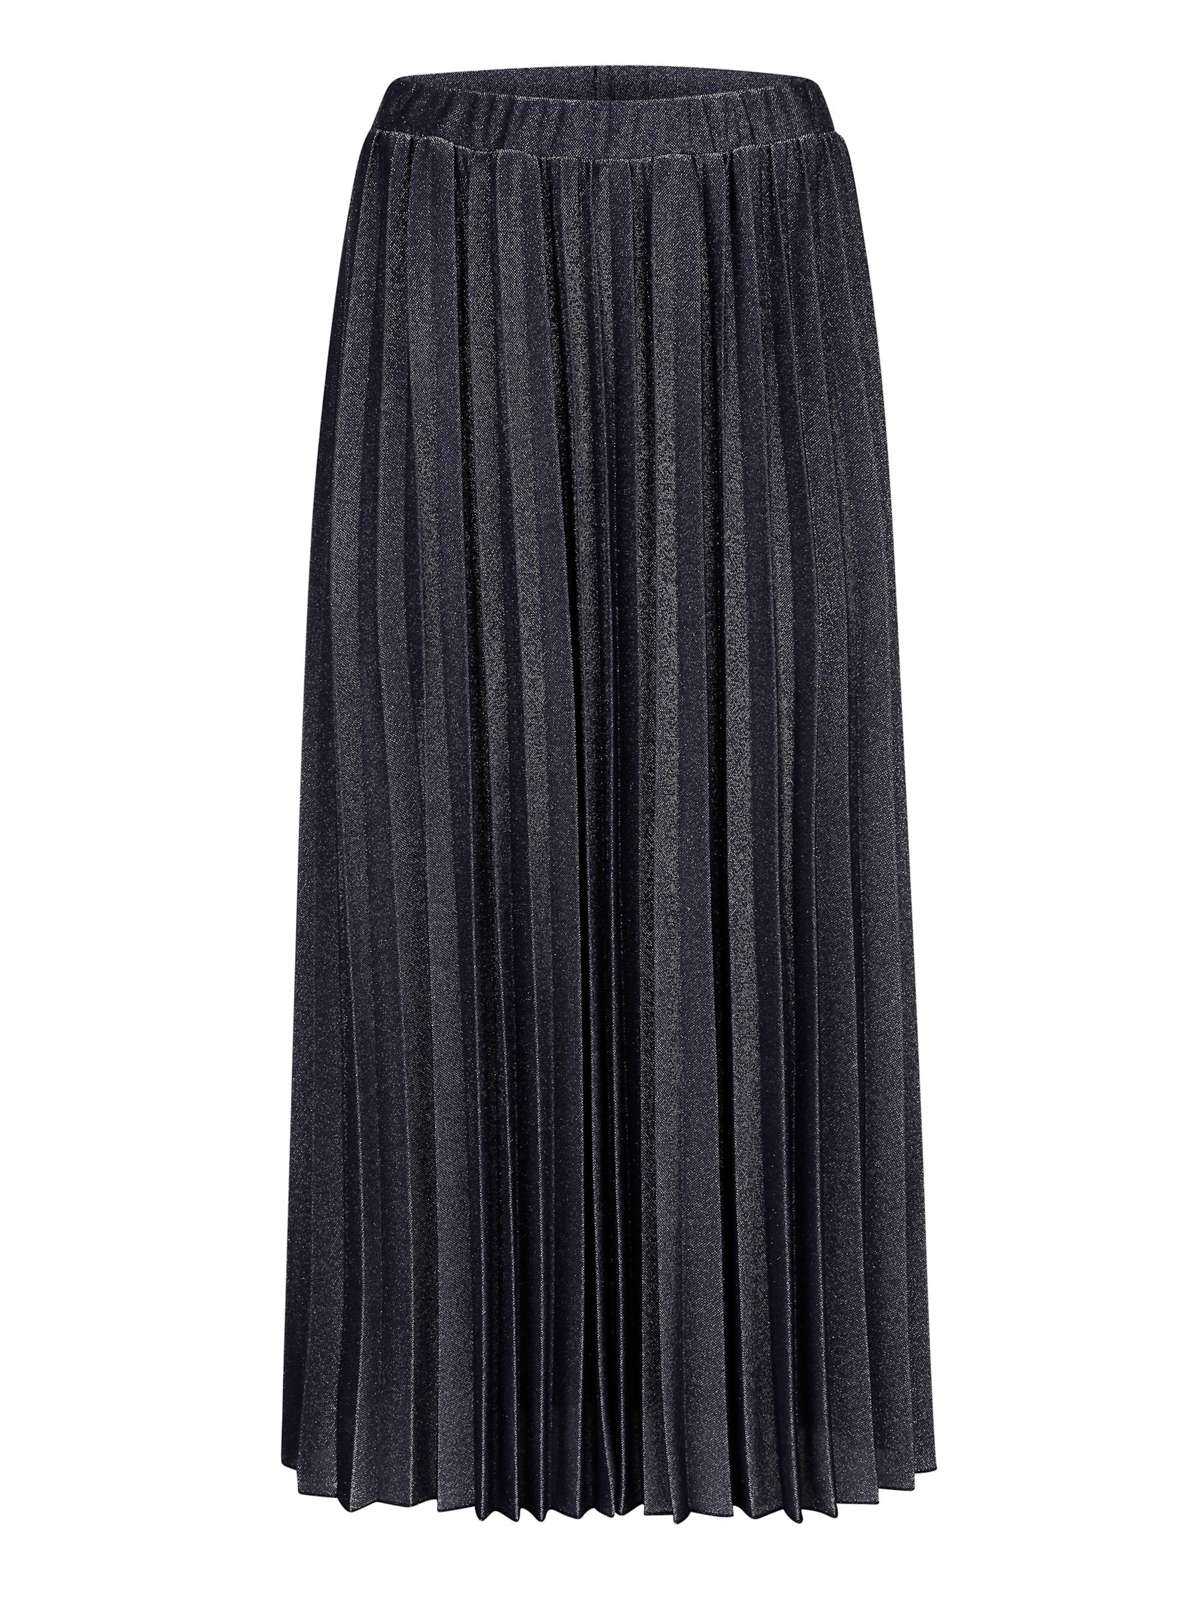 Плиссированная юбка Плиссированная юбка с металлизированными волокнами